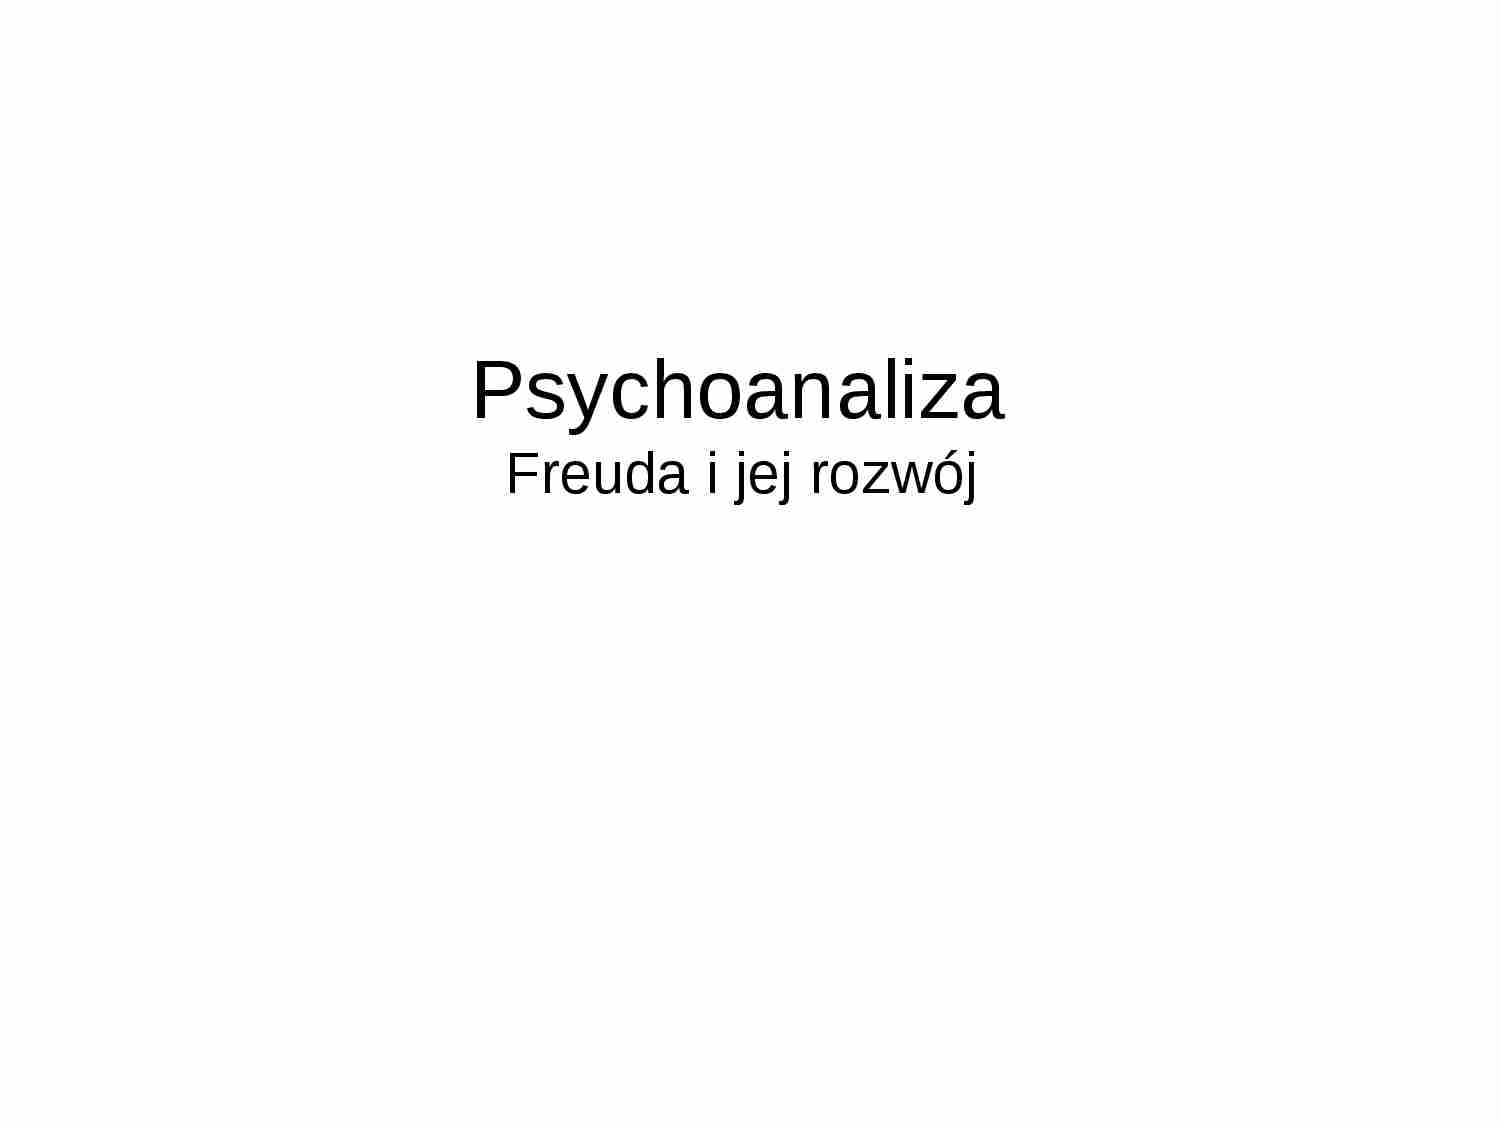 Psychoanaliza - Freuda i jej rozwój - strona 1